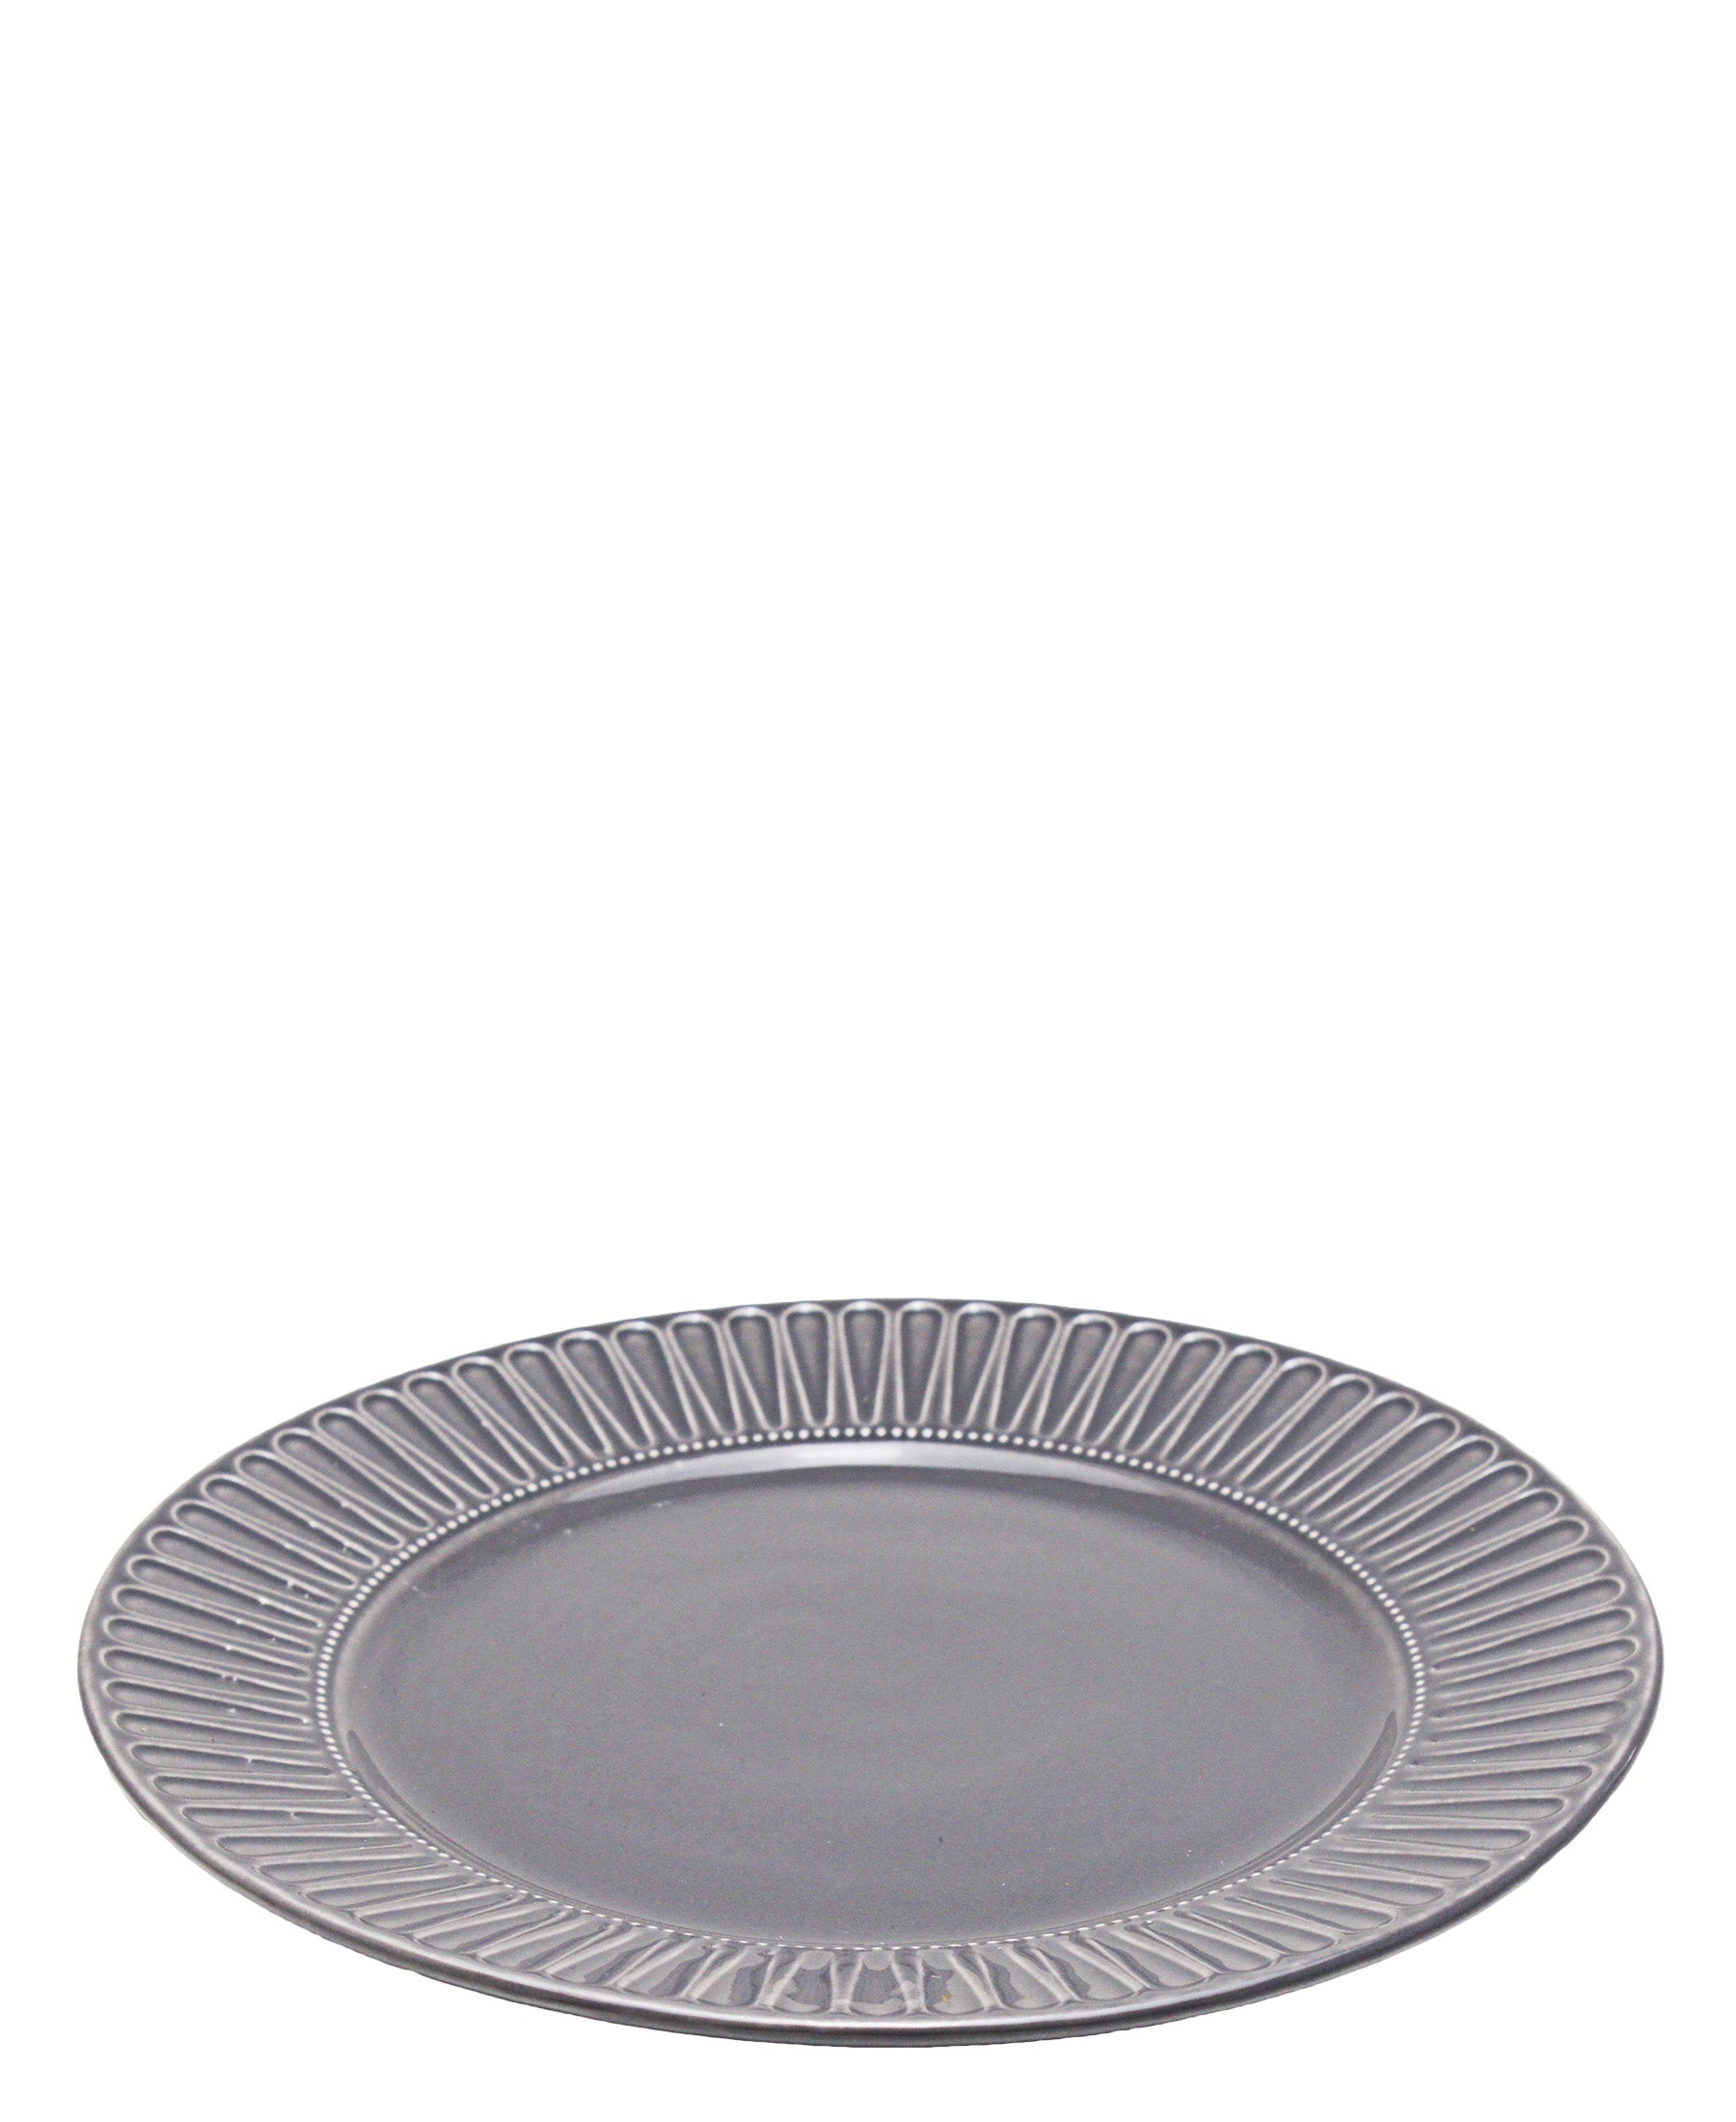 Eetrite Embossed Dinner Plate 27cm - Grey